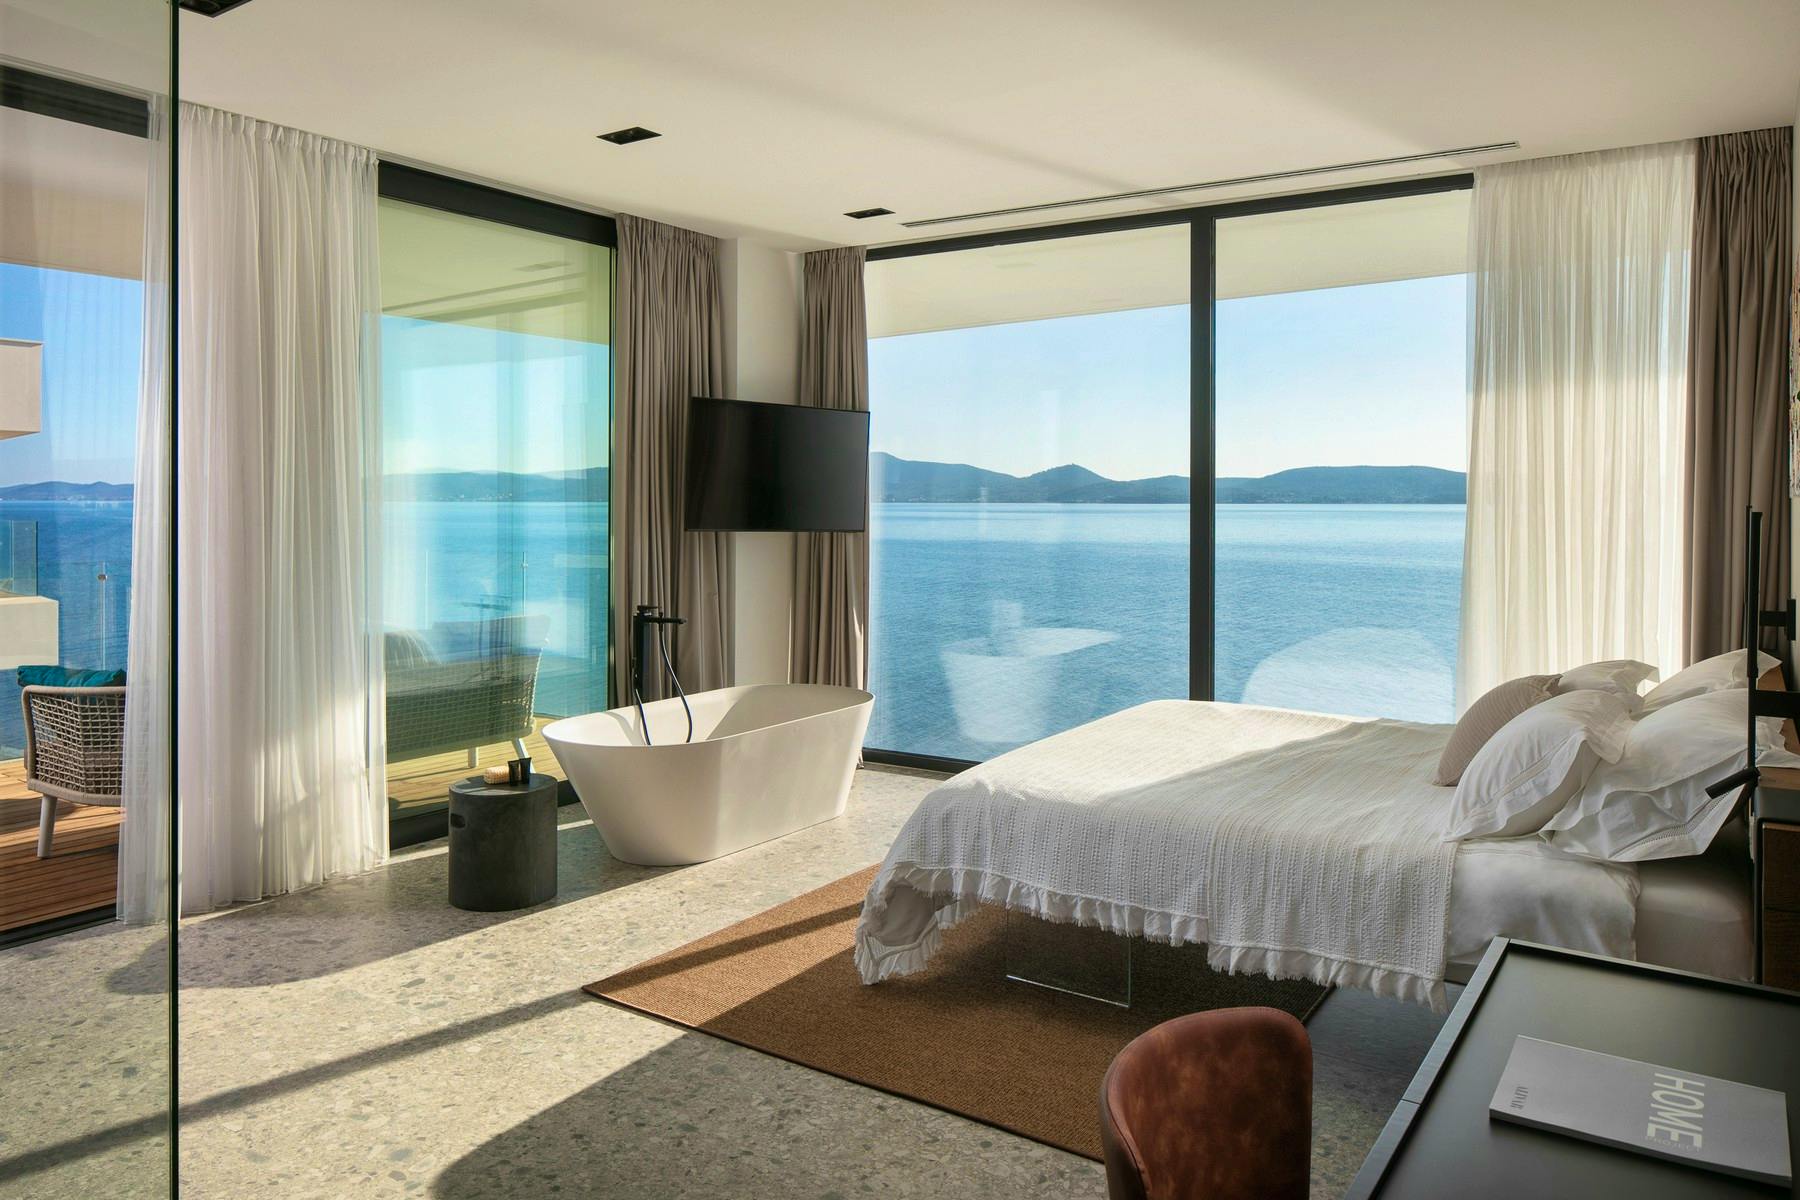 En-suite bedroom with spectacular sea view